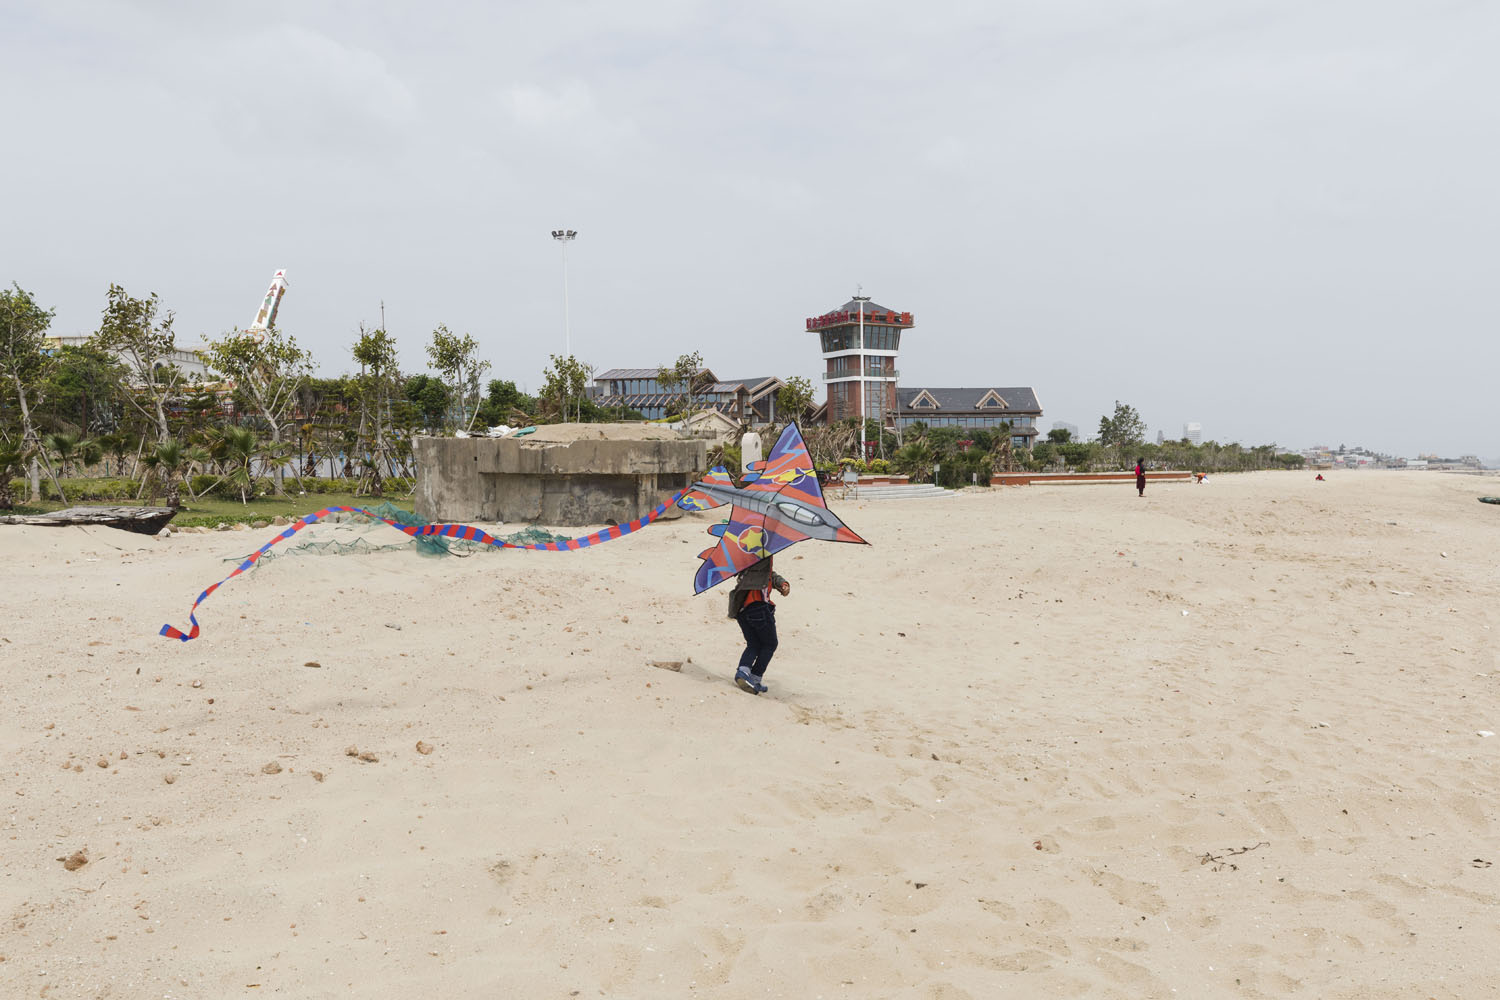 Boy with a kite at Guanyinshan Fantasy Beach. Xiamen, China. 2018.